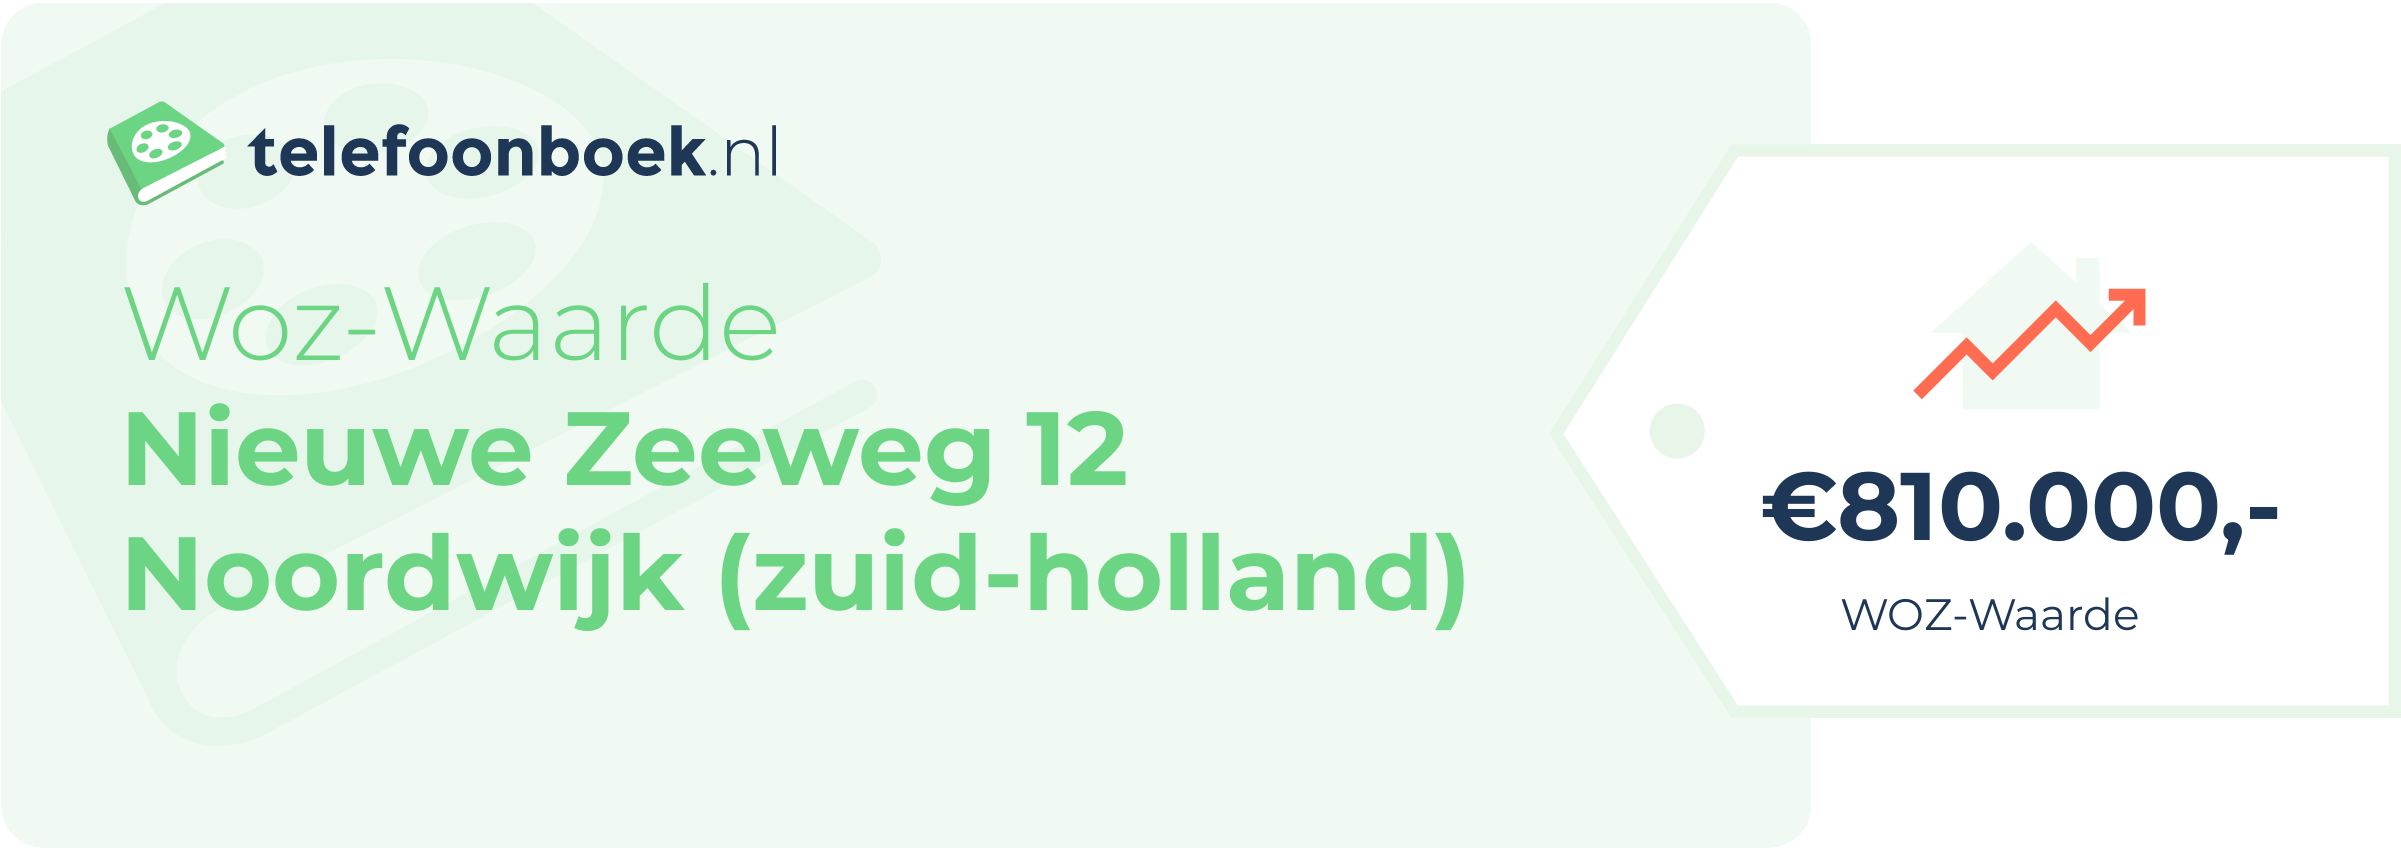 WOZ-waarde Nieuwe Zeeweg 12 Noordwijk (Zuid-Holland)